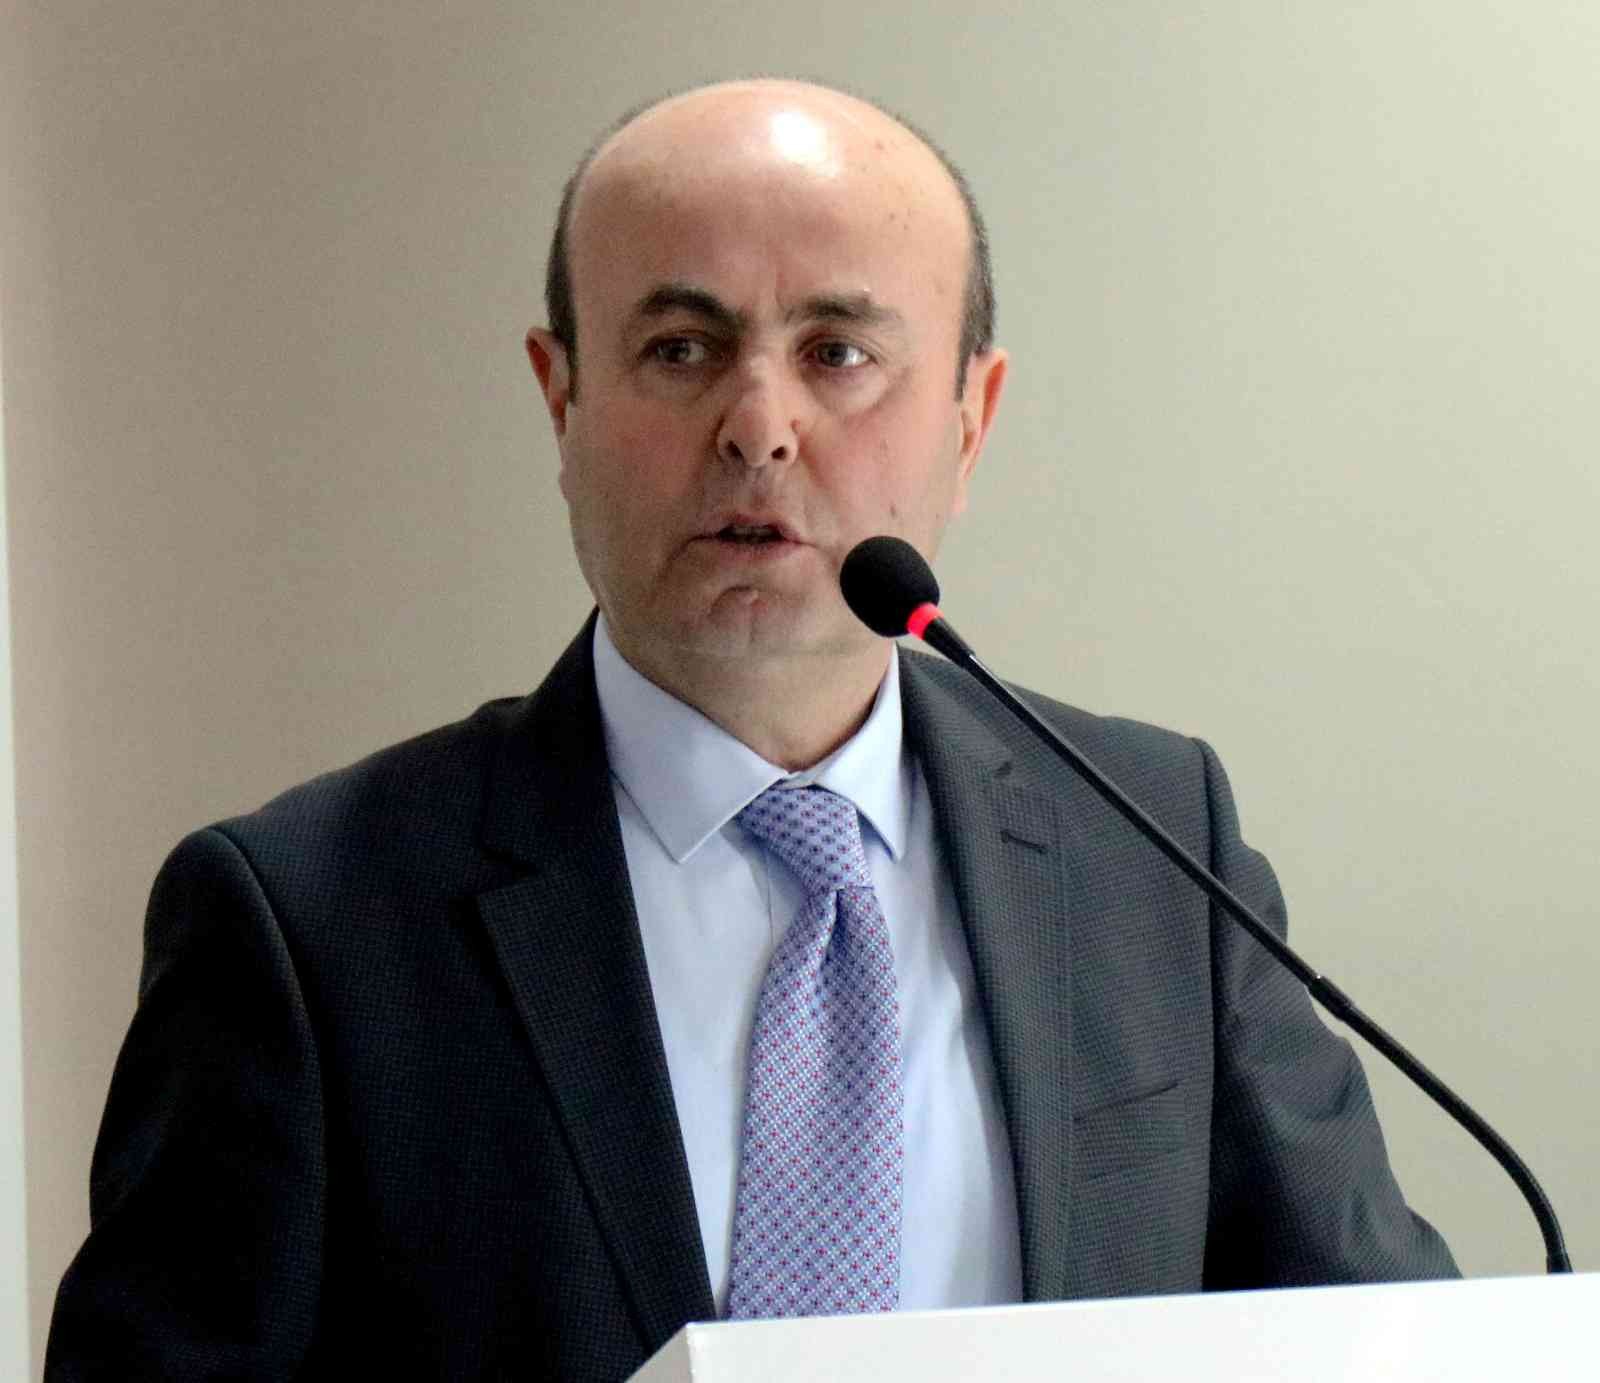 Belediye Başkanı Ekicioğlu: “Termal Turizm Projelerimiz var” #kirsehir